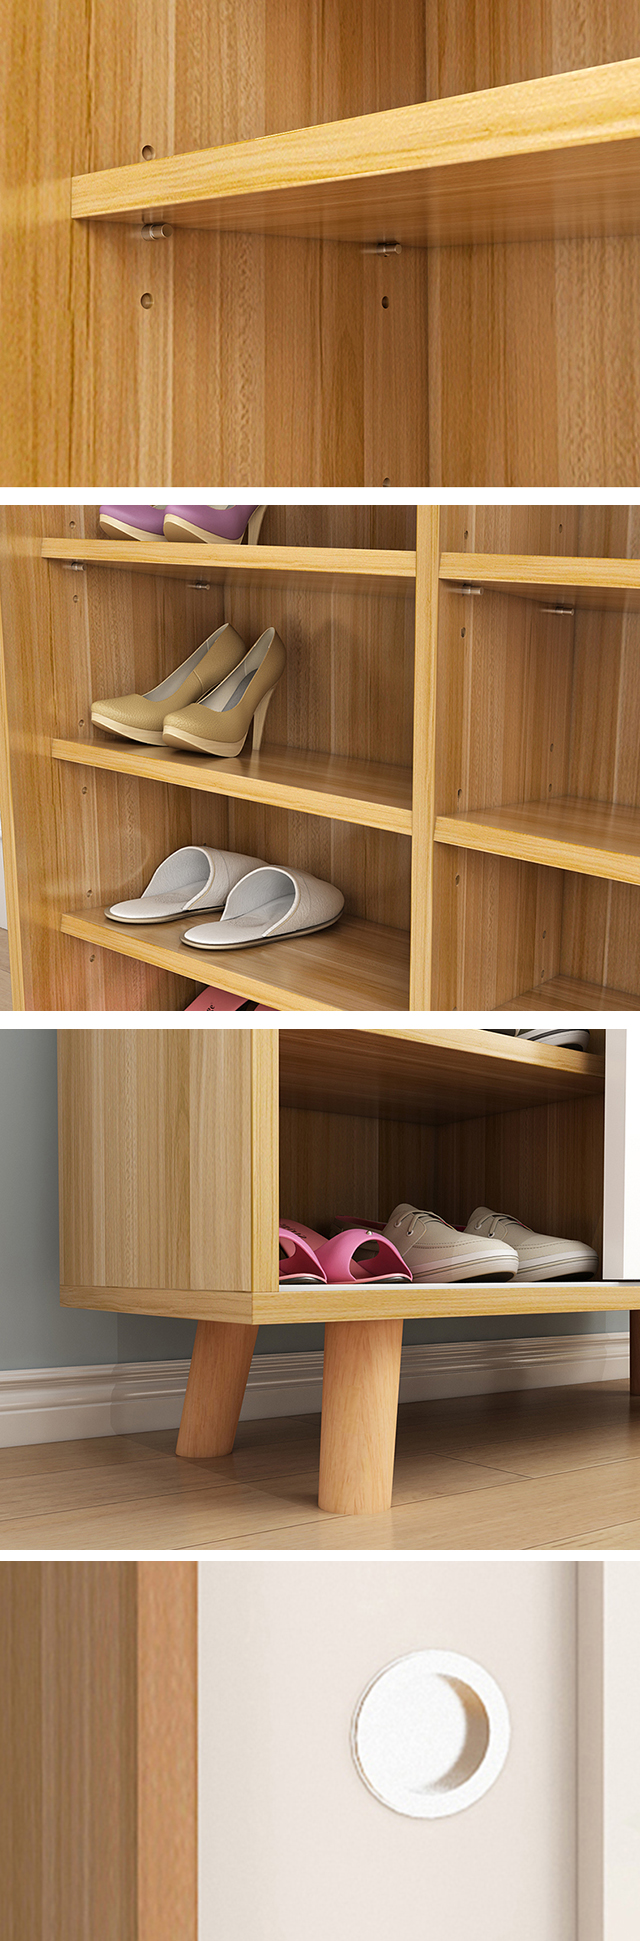 Легкий для того чтобы очистить покрытый меламином шкаф изделия из древесины шкафа ботинка доски частицы